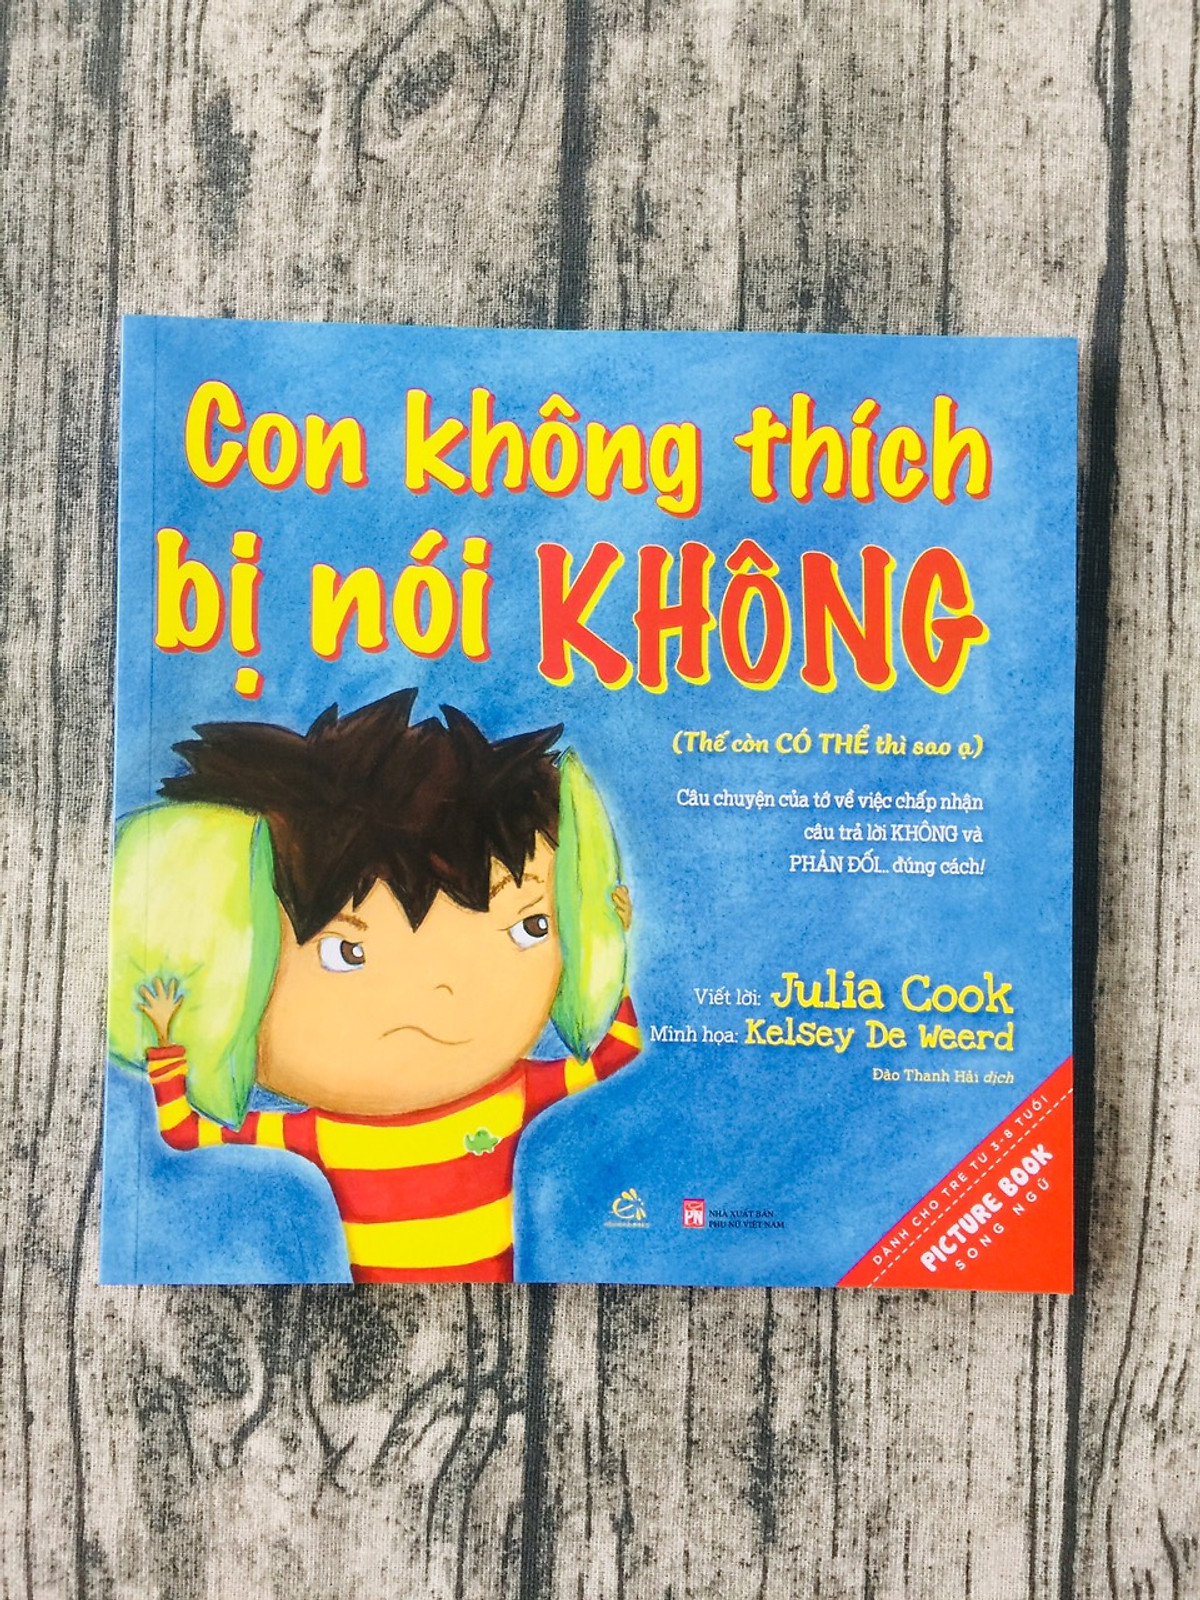 Picture Book Song Ngữ Anh Việt - Con Không Thích Bị Nói Không